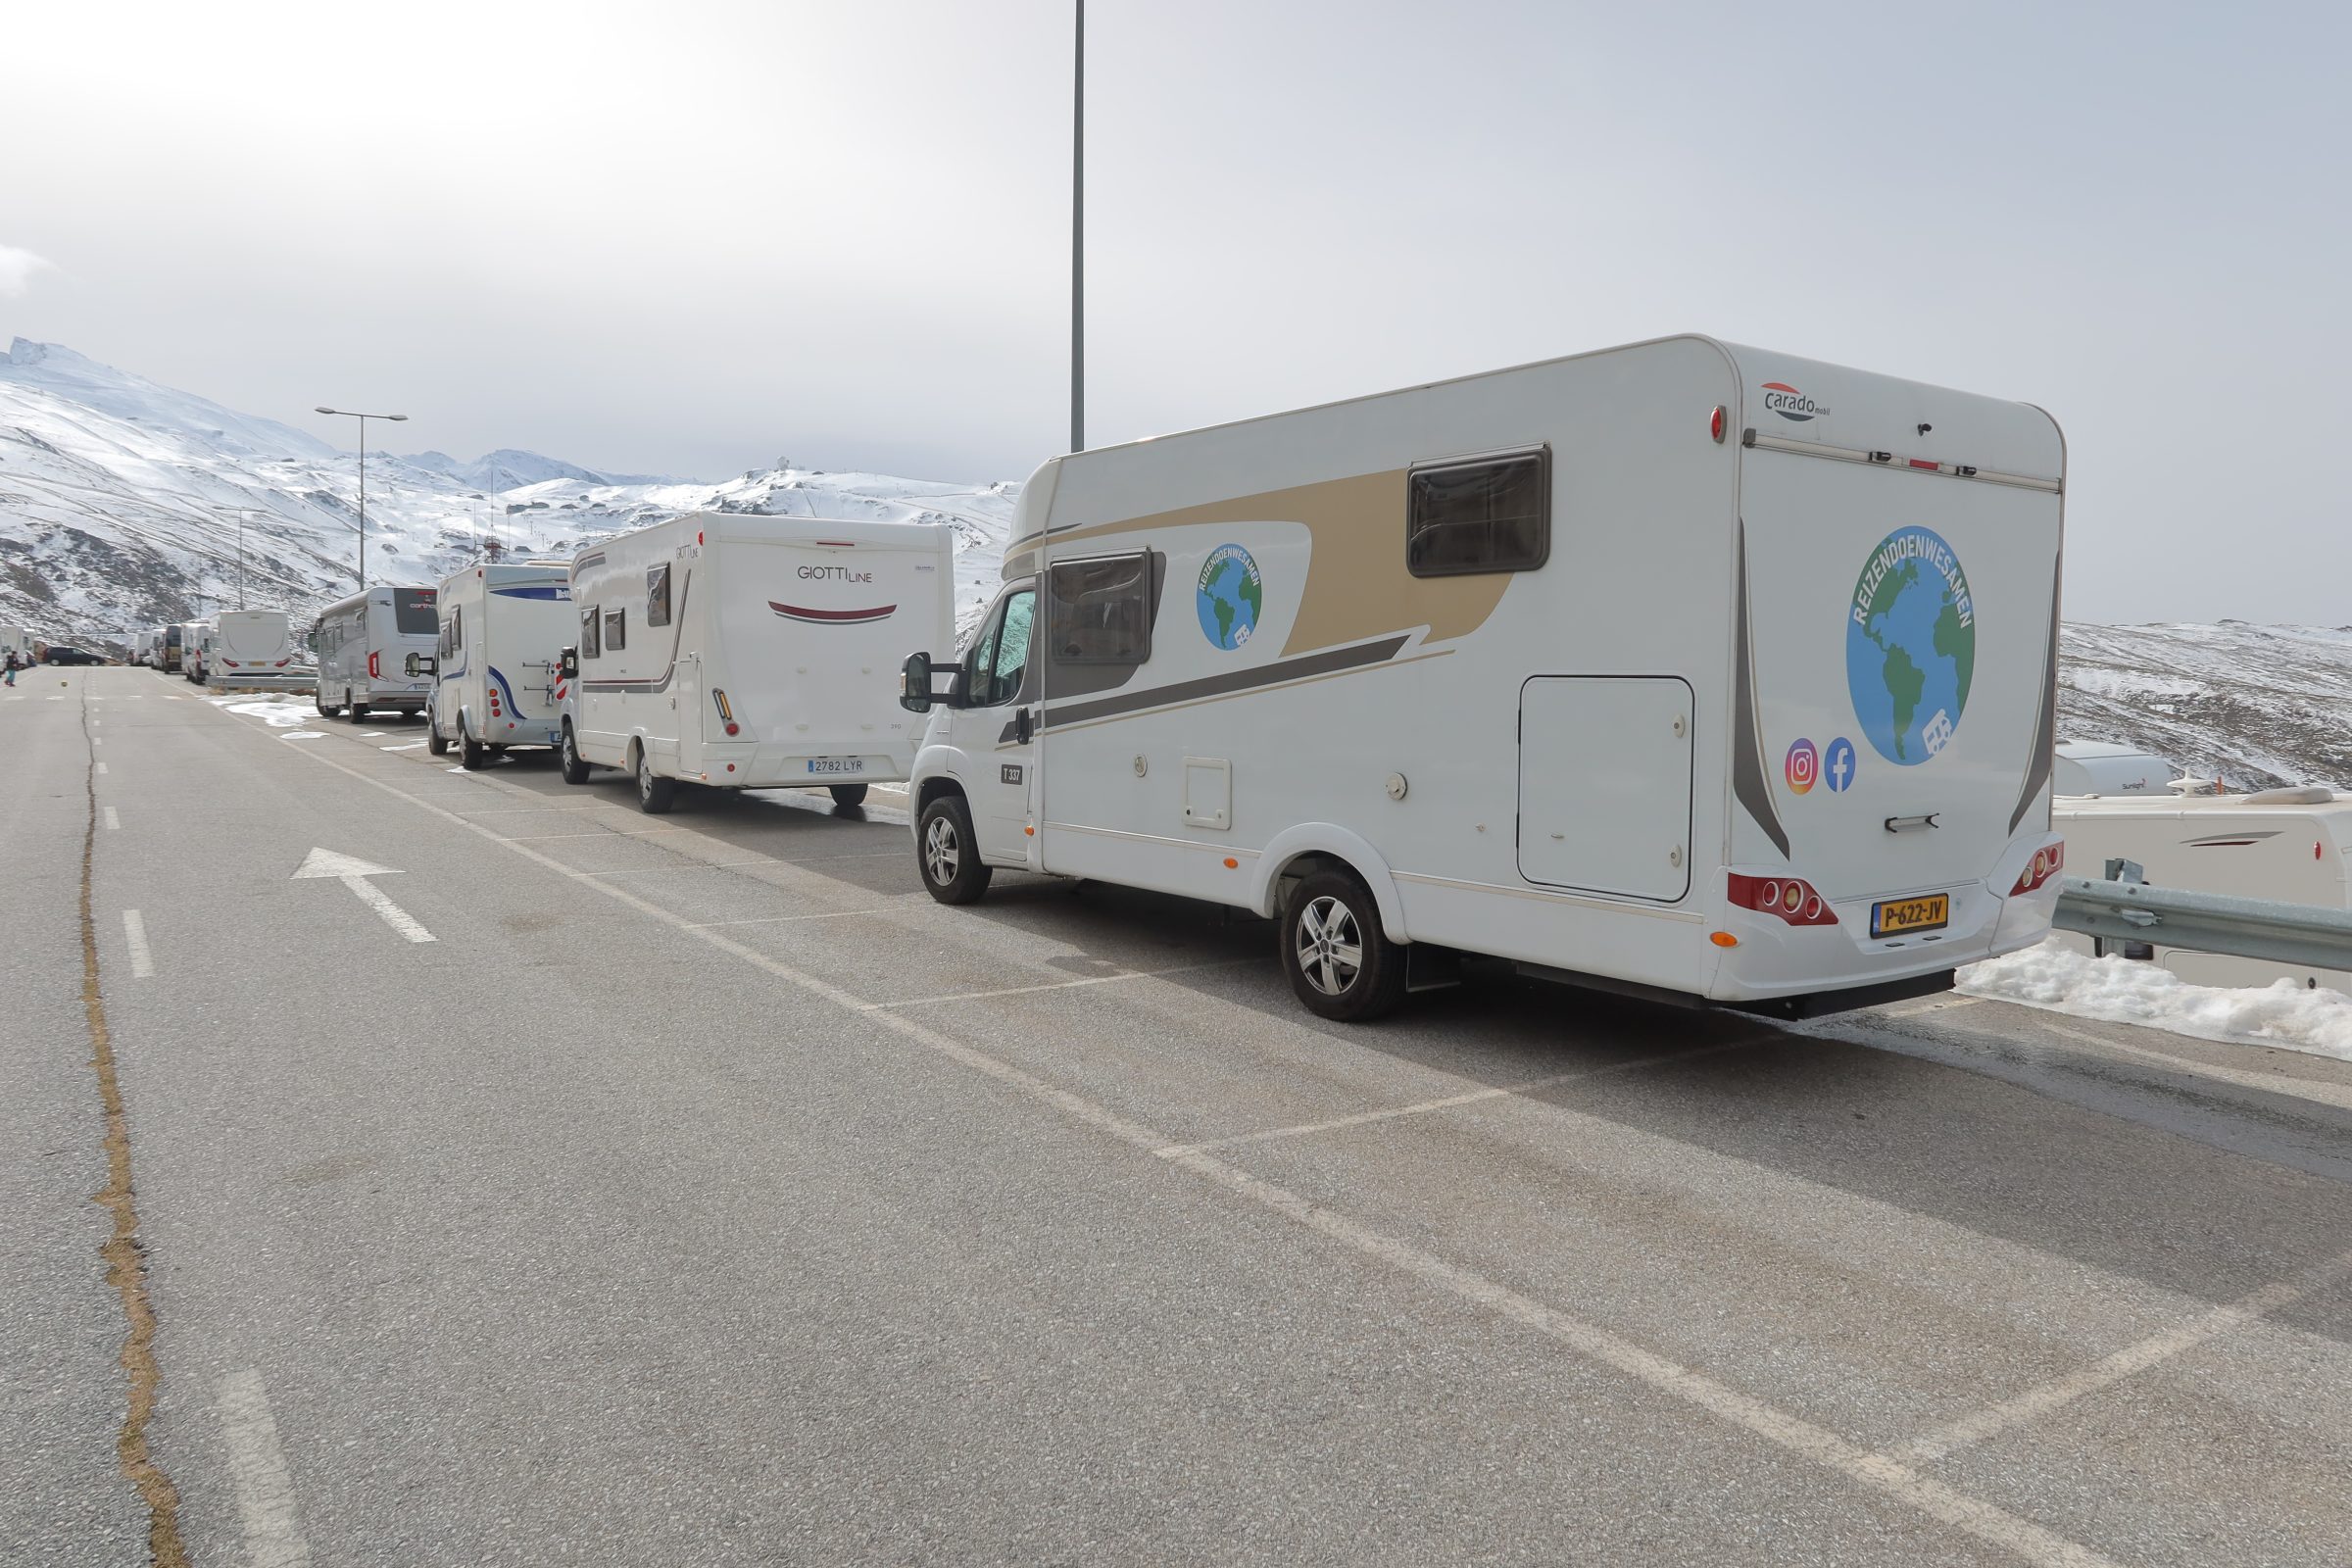 Com o trailer na neve na Serra Nevada | Dicas de motorhome e locais de interesse no sul da Espanha